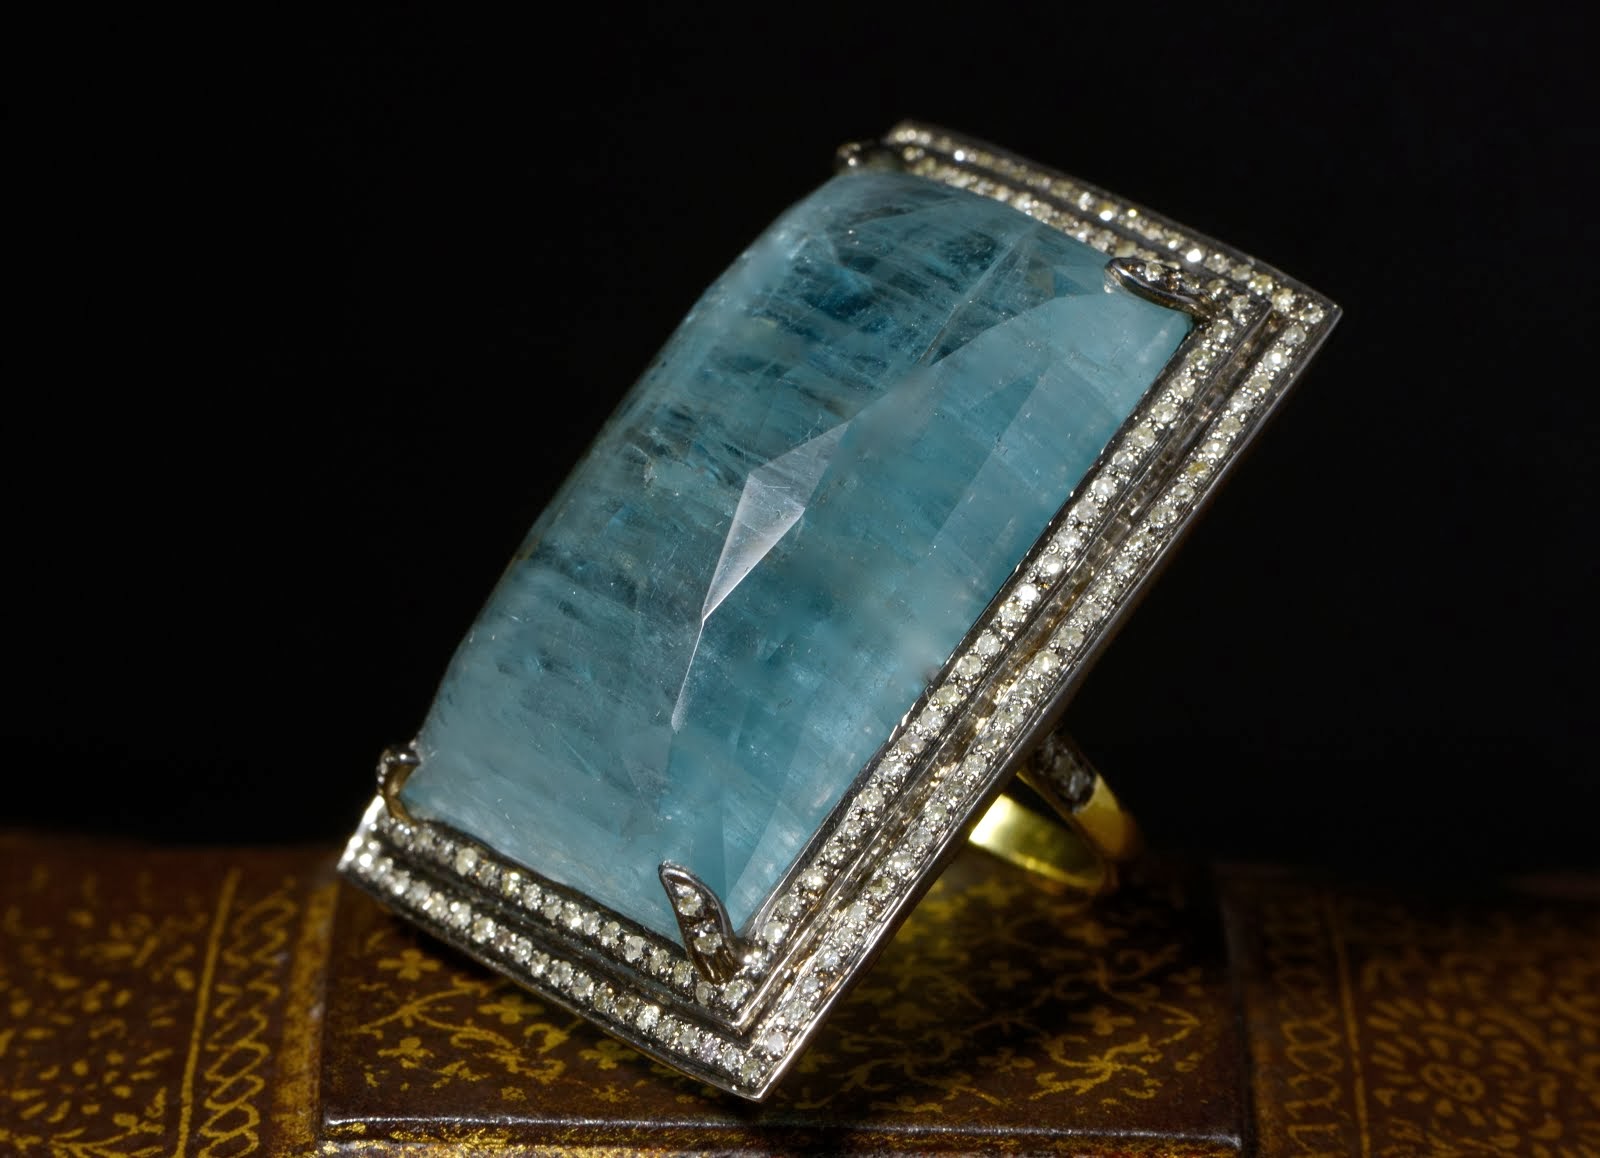 Aquamarine & Diamond ring